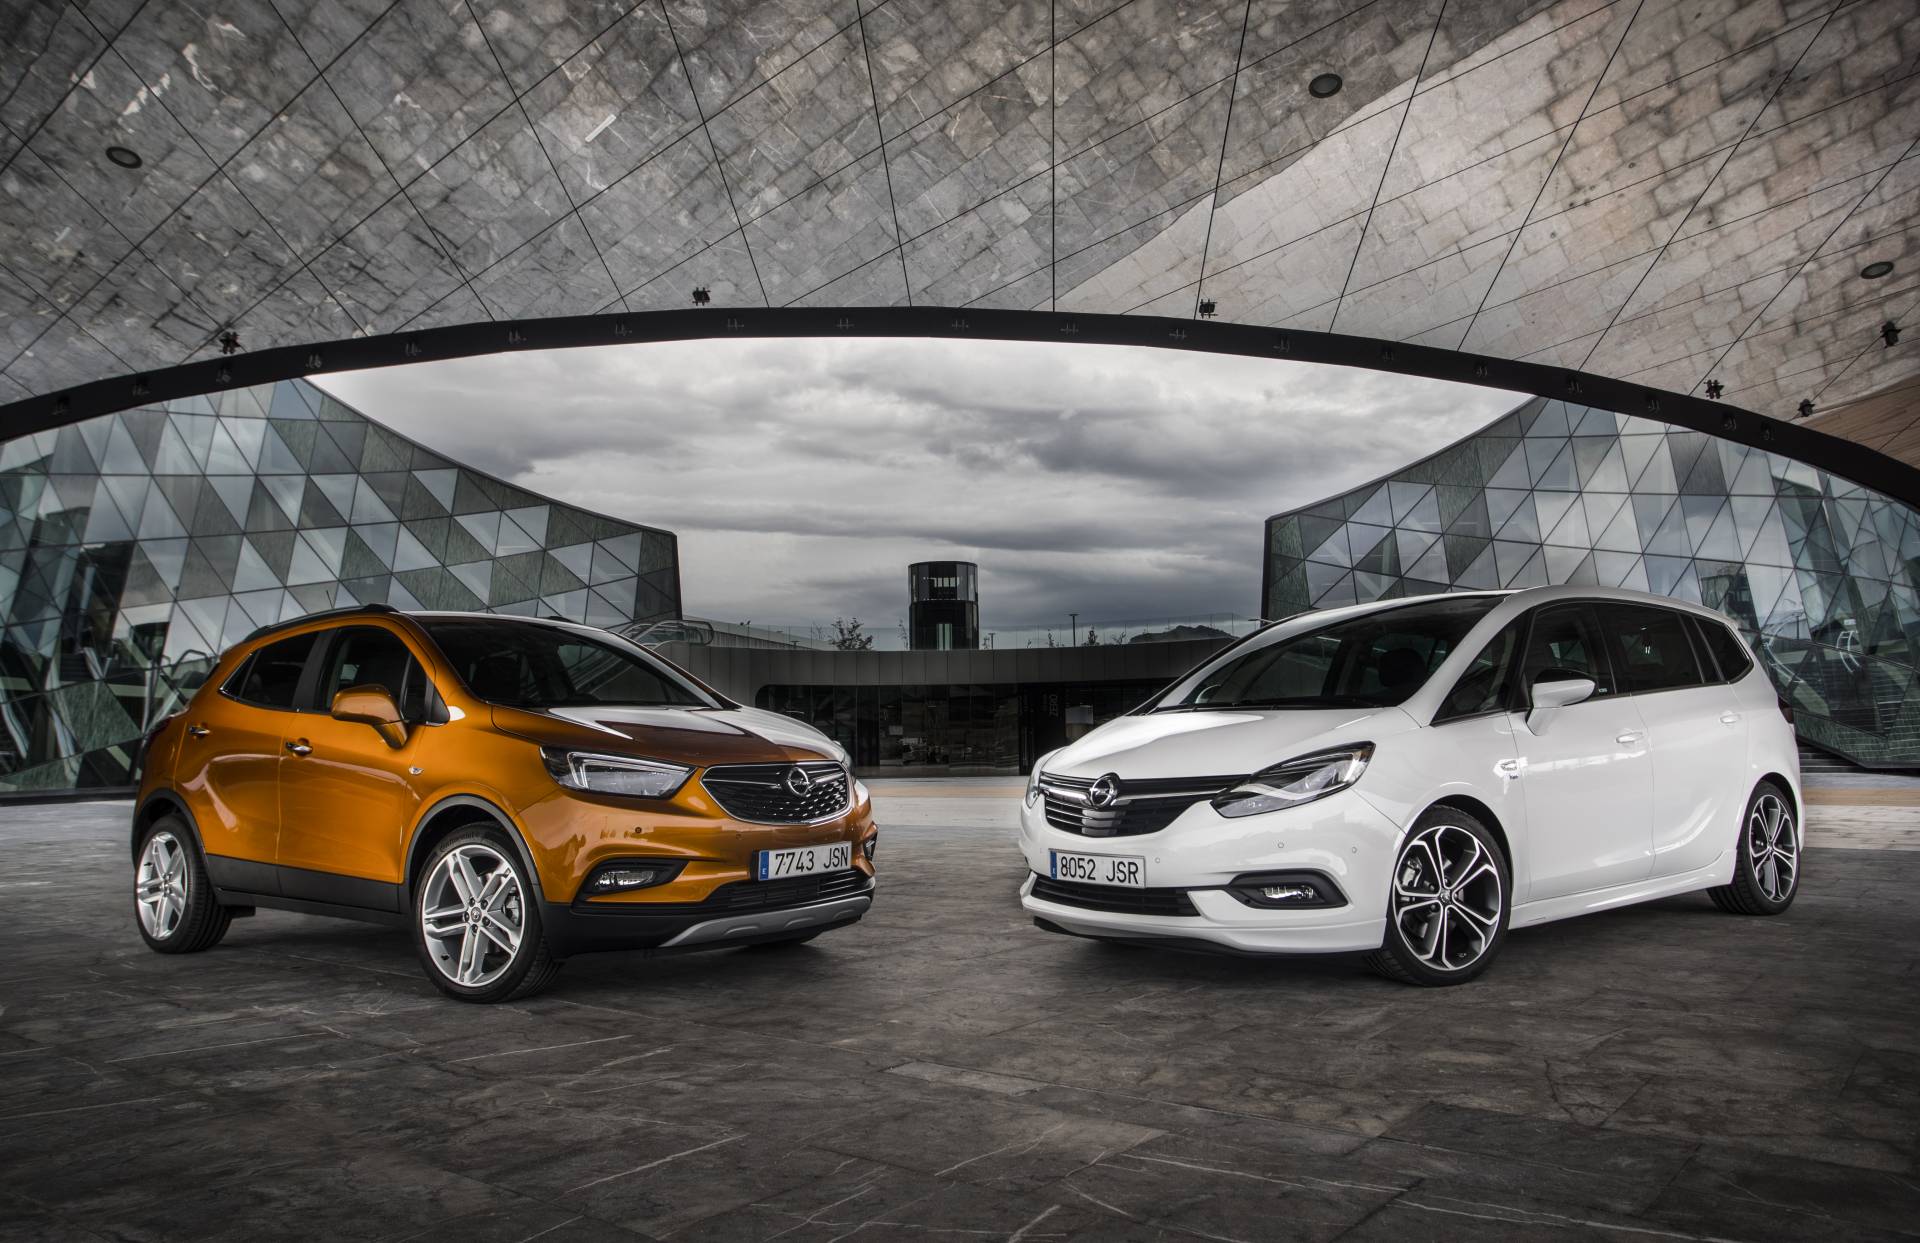 Opel presenta dos interesantes modelos, los nuevos Opel Zafira y Opel Mokka X.